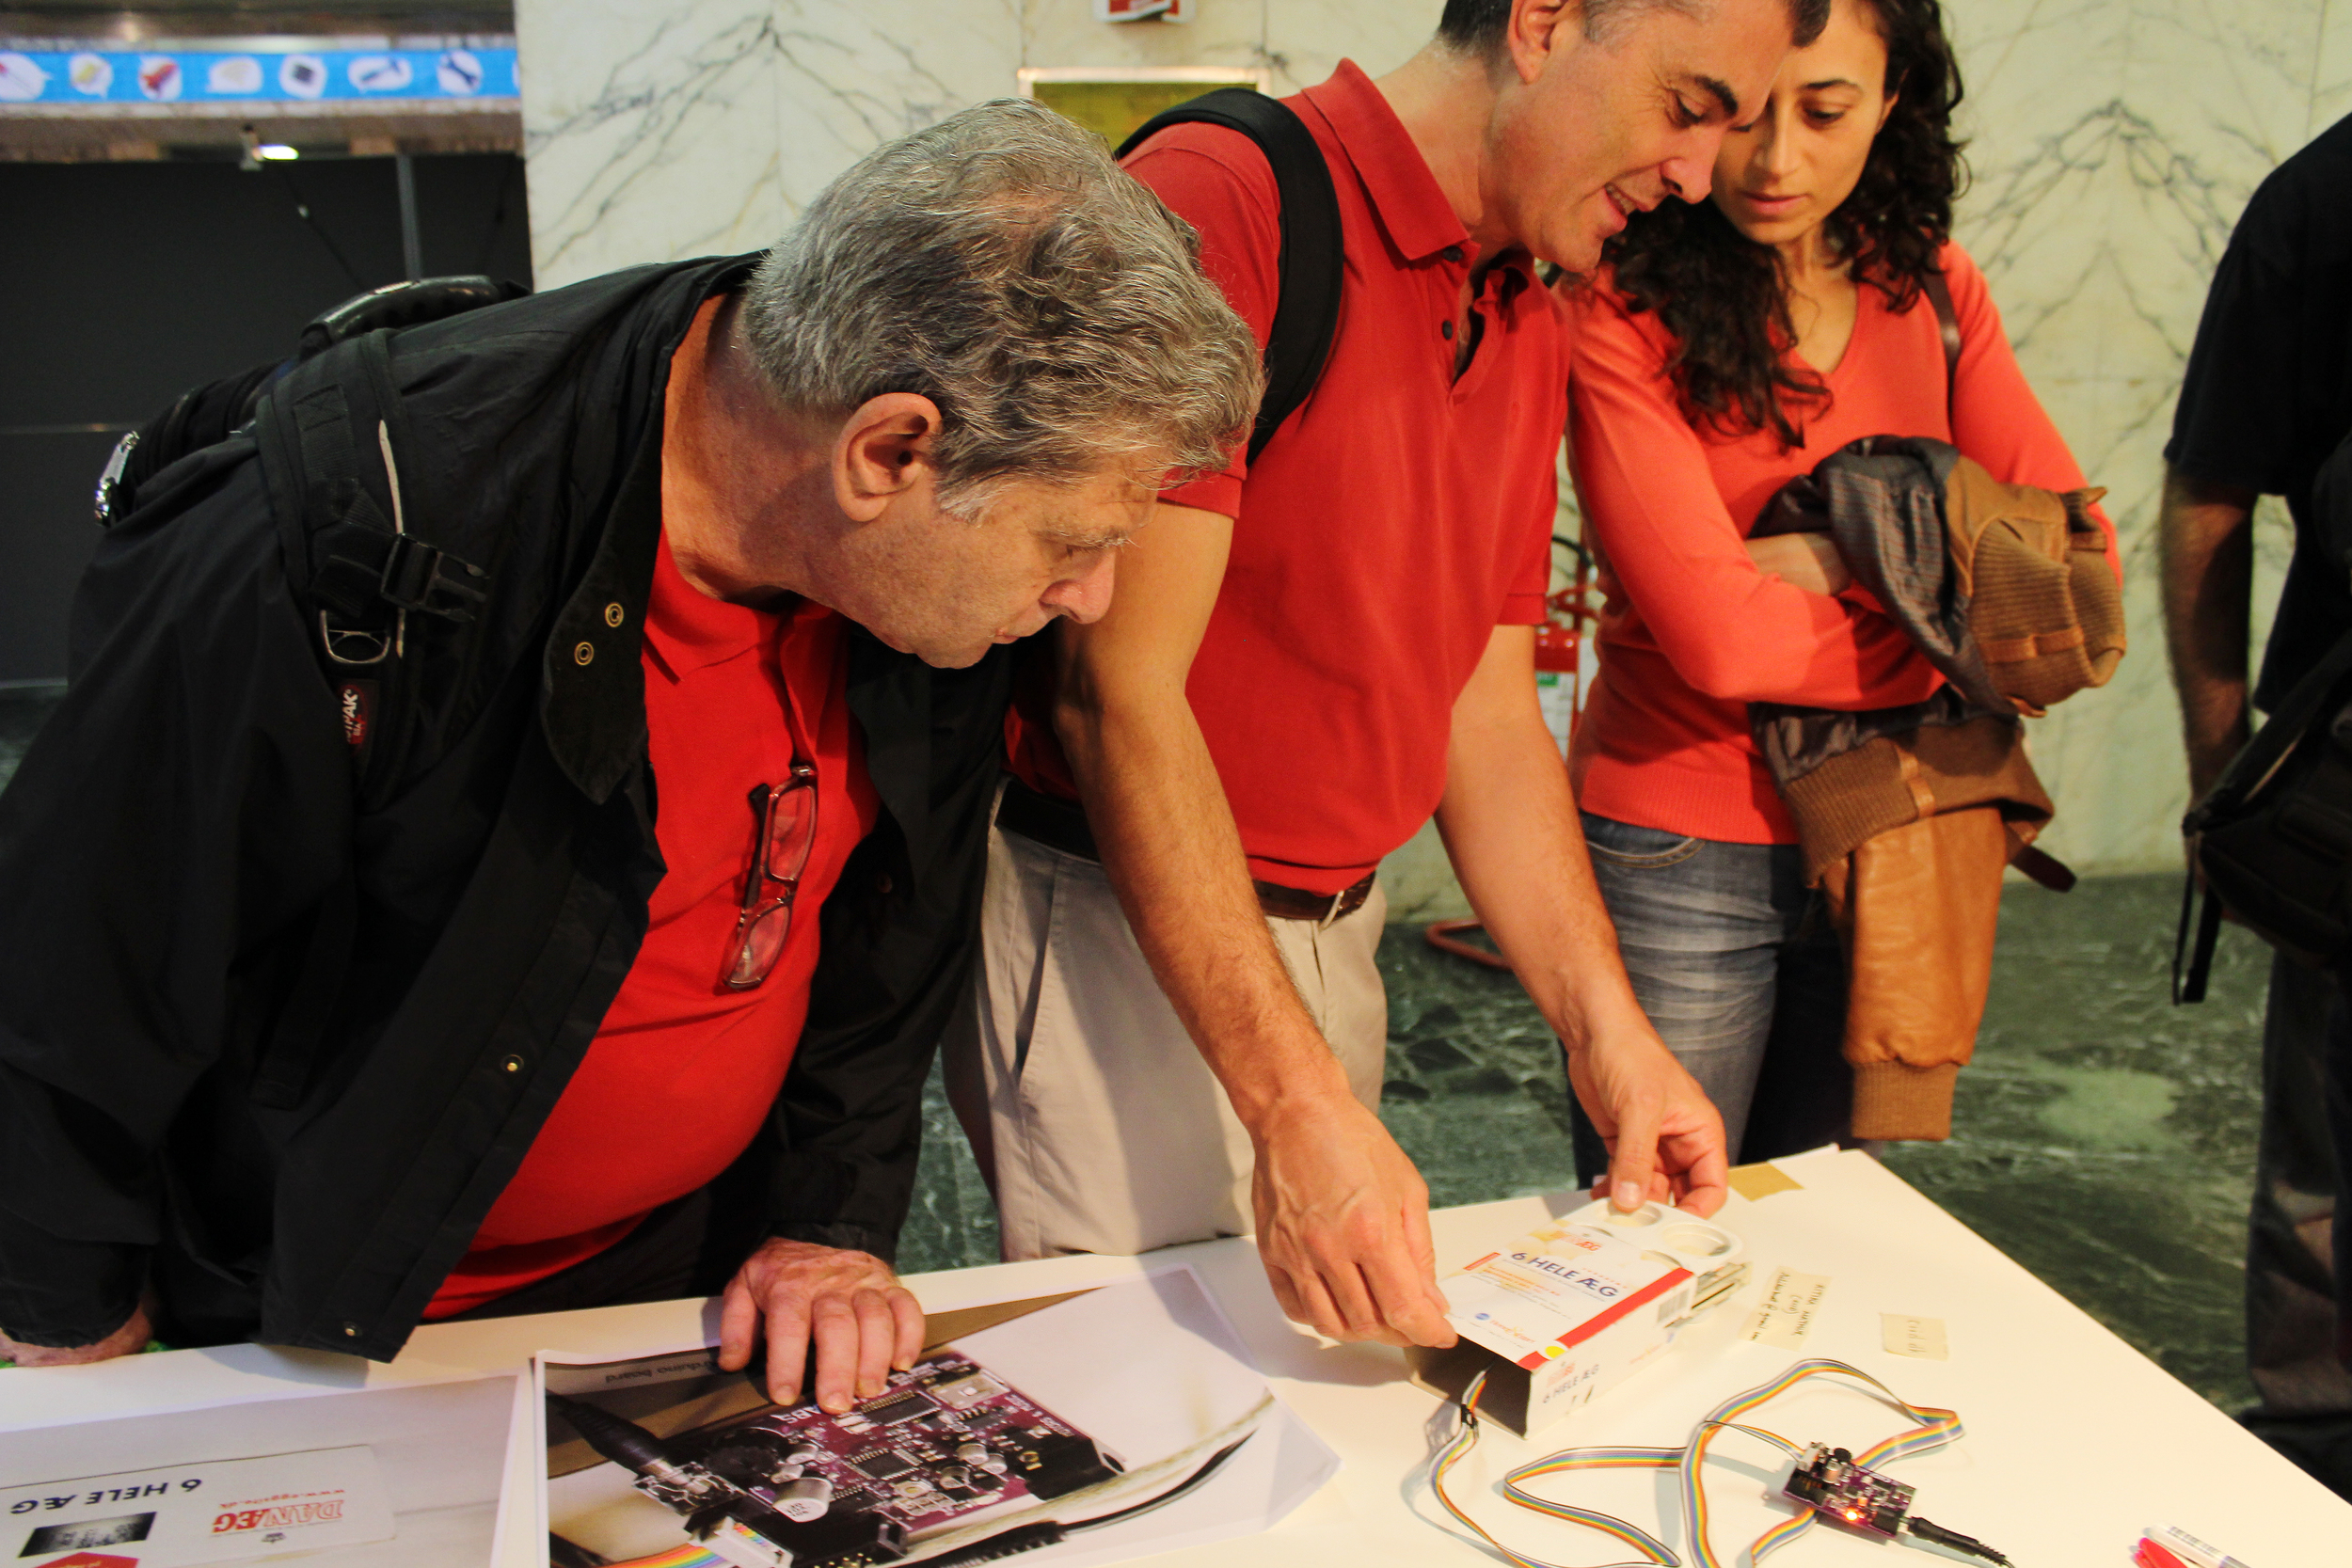 Exhibit at Maker Faire, Rome, 2013